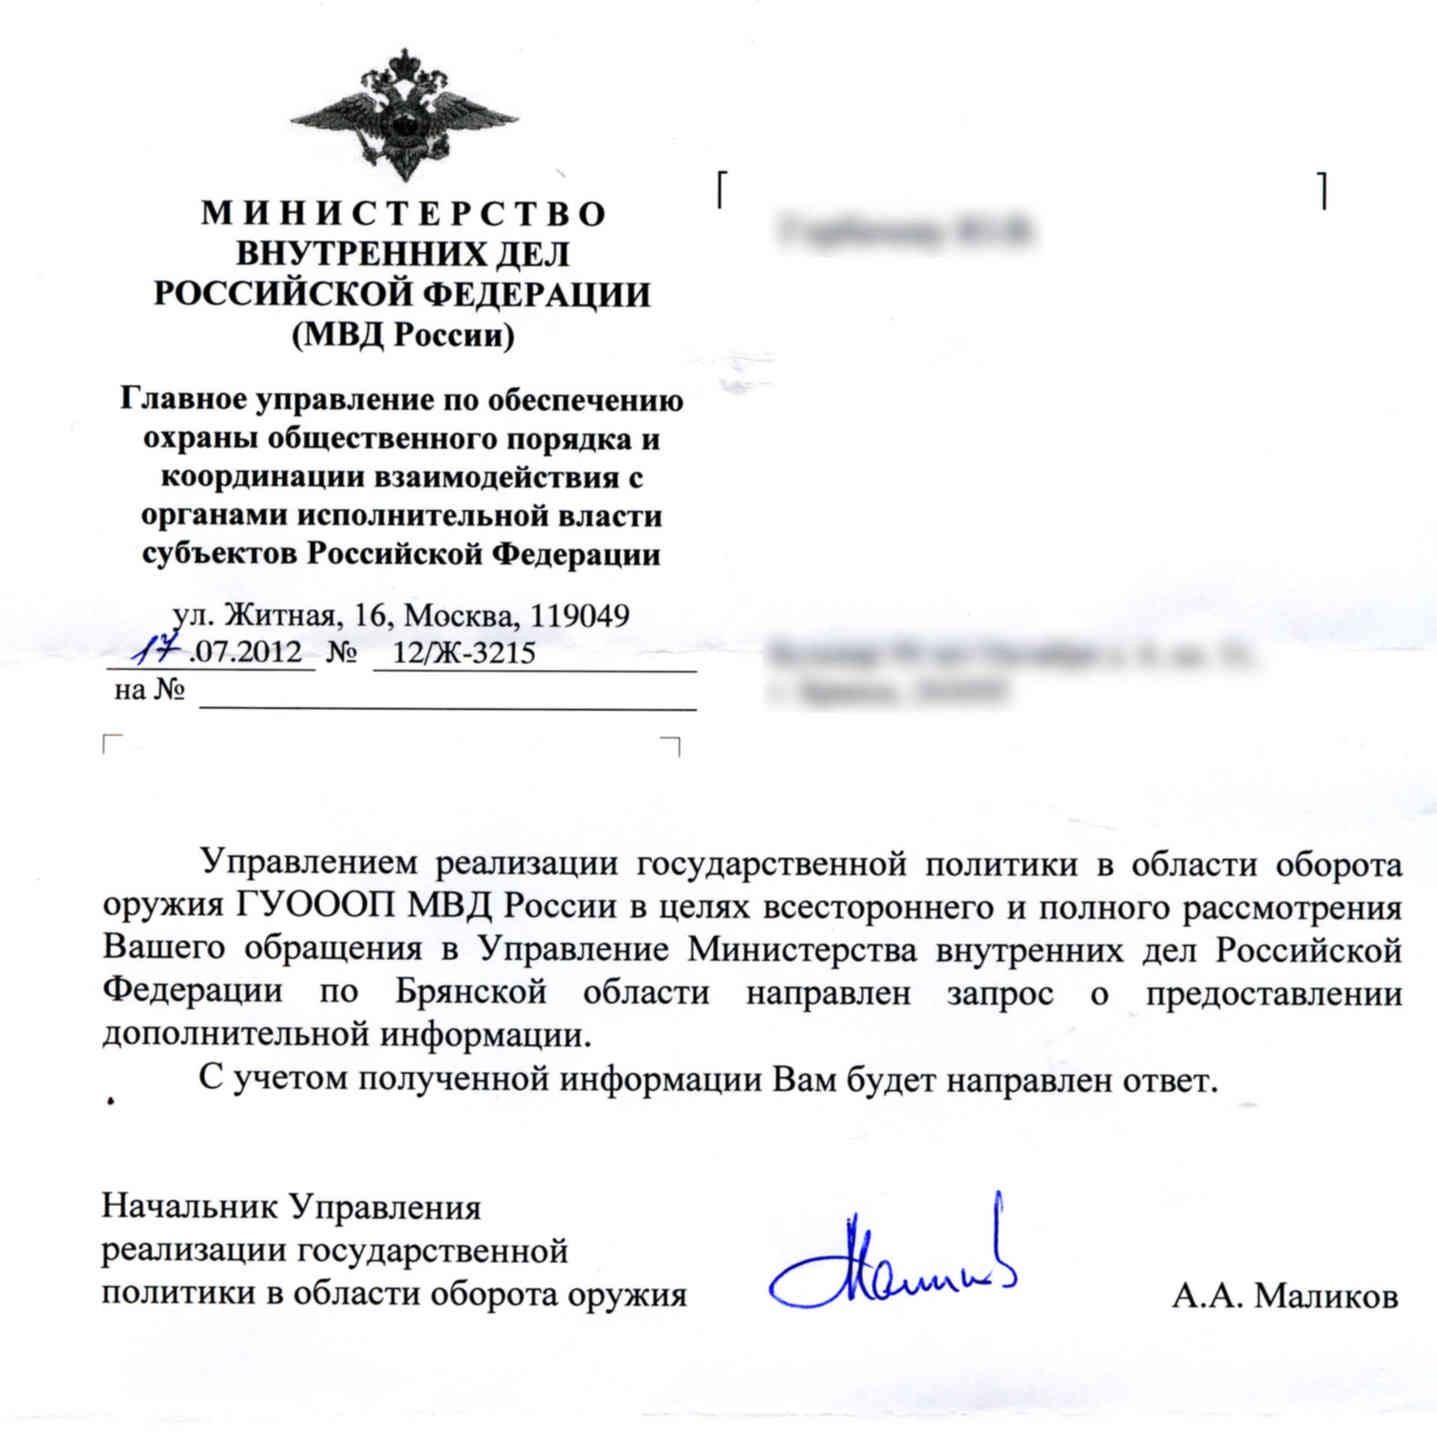 Справка о предоставлении информации образец МВД России